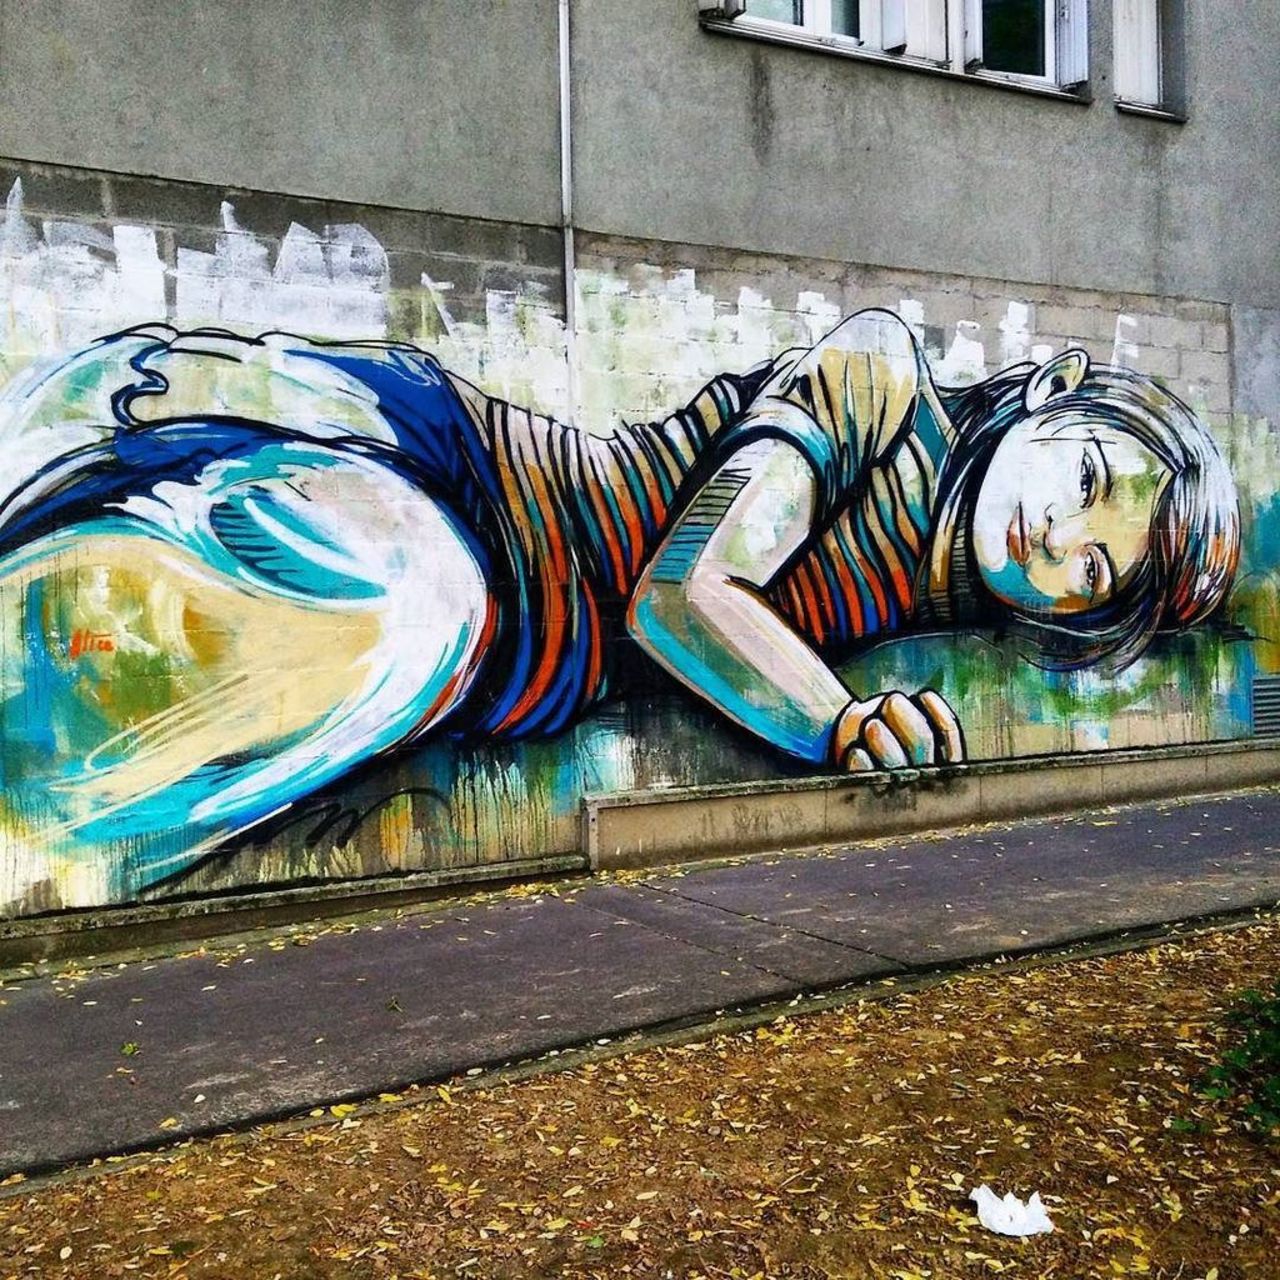 By @alicepasquini #alicepasquini 
#streetart #streetartparis #parisstreetart #parisgraffiti #graffiti #graffitiart … https://t.co/ebxSFTdtRK